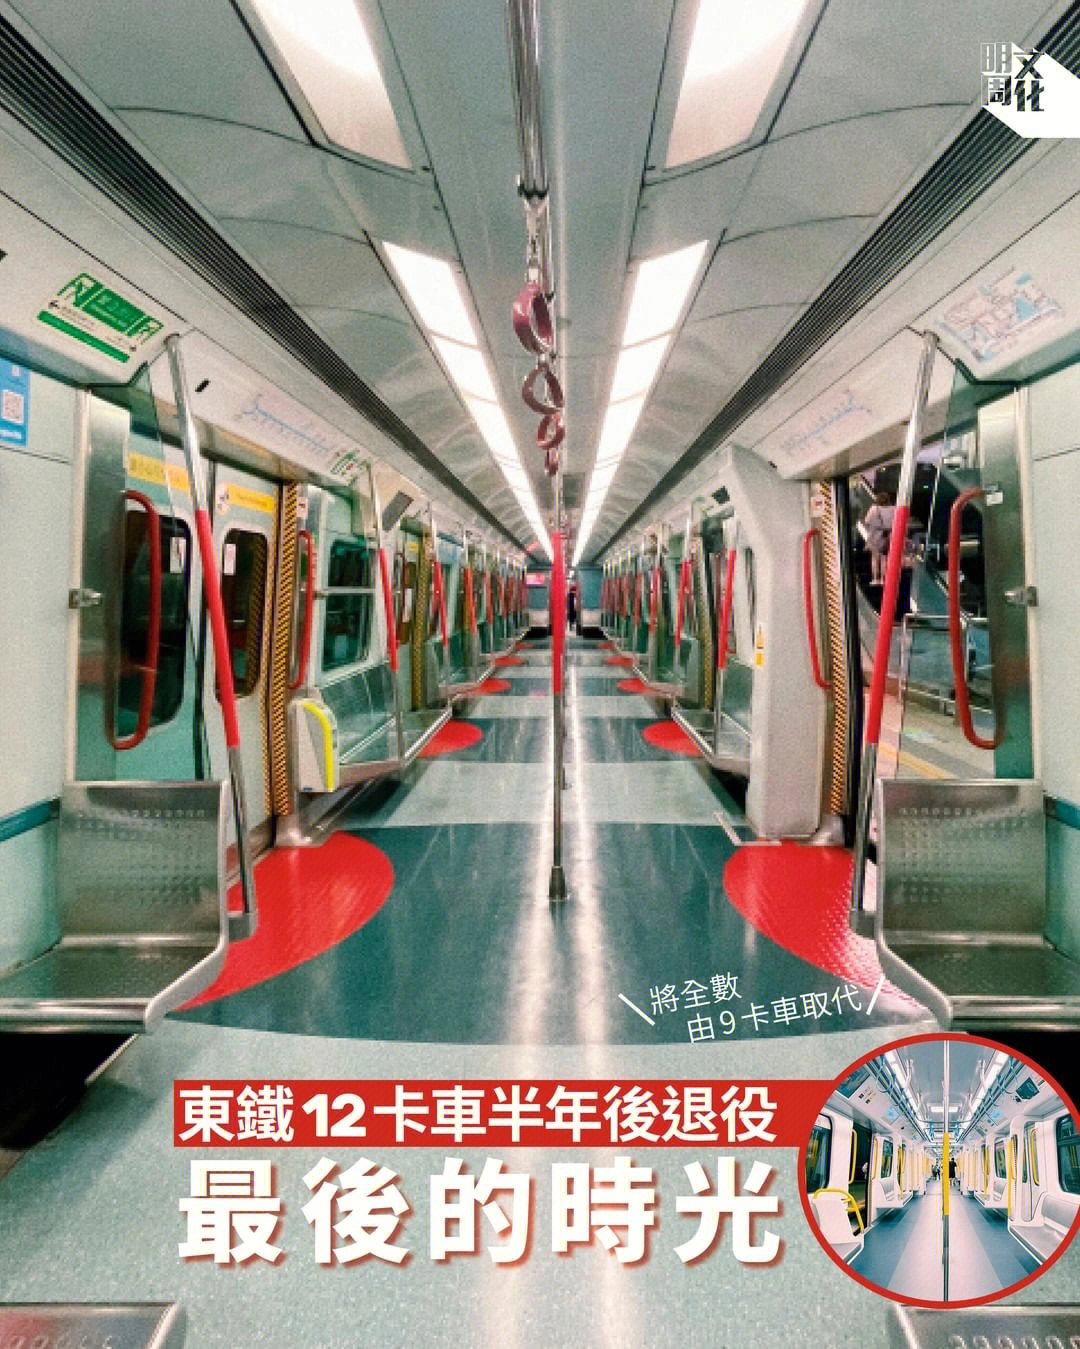 九广铁路广告 神秘图片